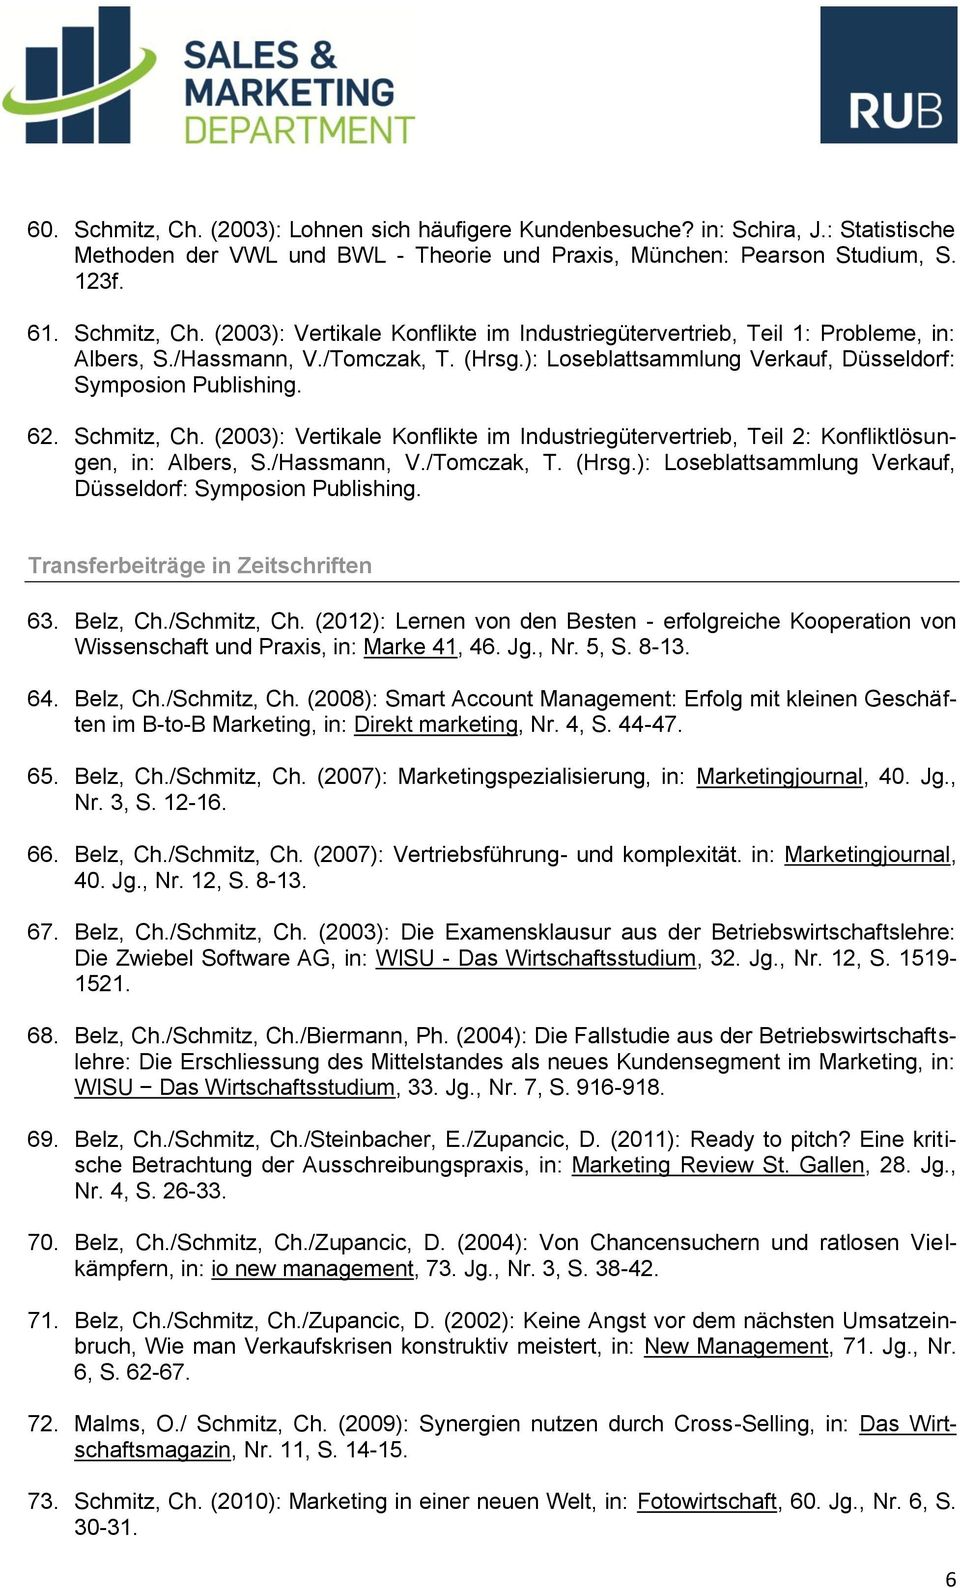 (2003): Vertikale Konflikte im Industriegütervertrieb, Teil 2: Konfliktlösungen, in: Albers, S./Hassmann, V./Tomczak, T. (Hrsg.): Loseblattsammlung Verkauf, Düsseldorf: Symposion Publishing.